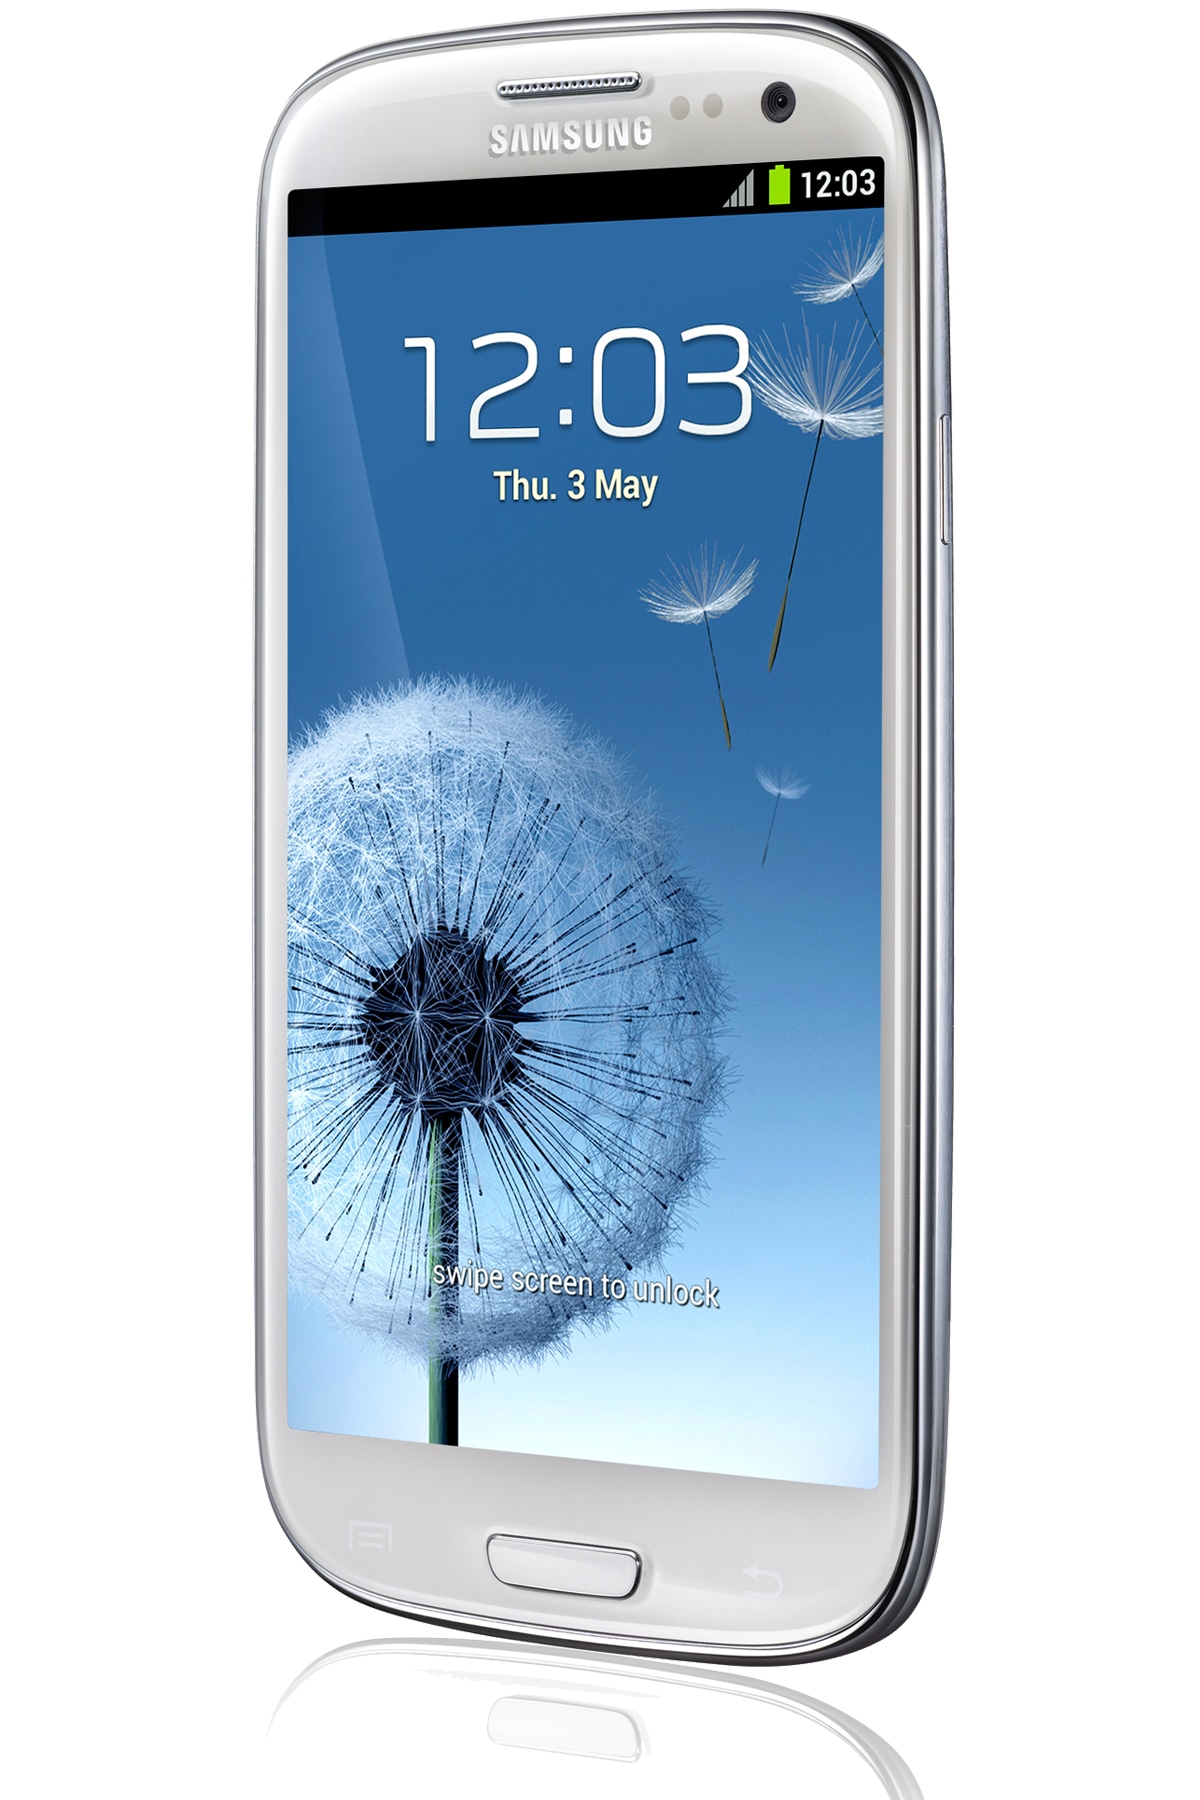 Samsung Galaxy III